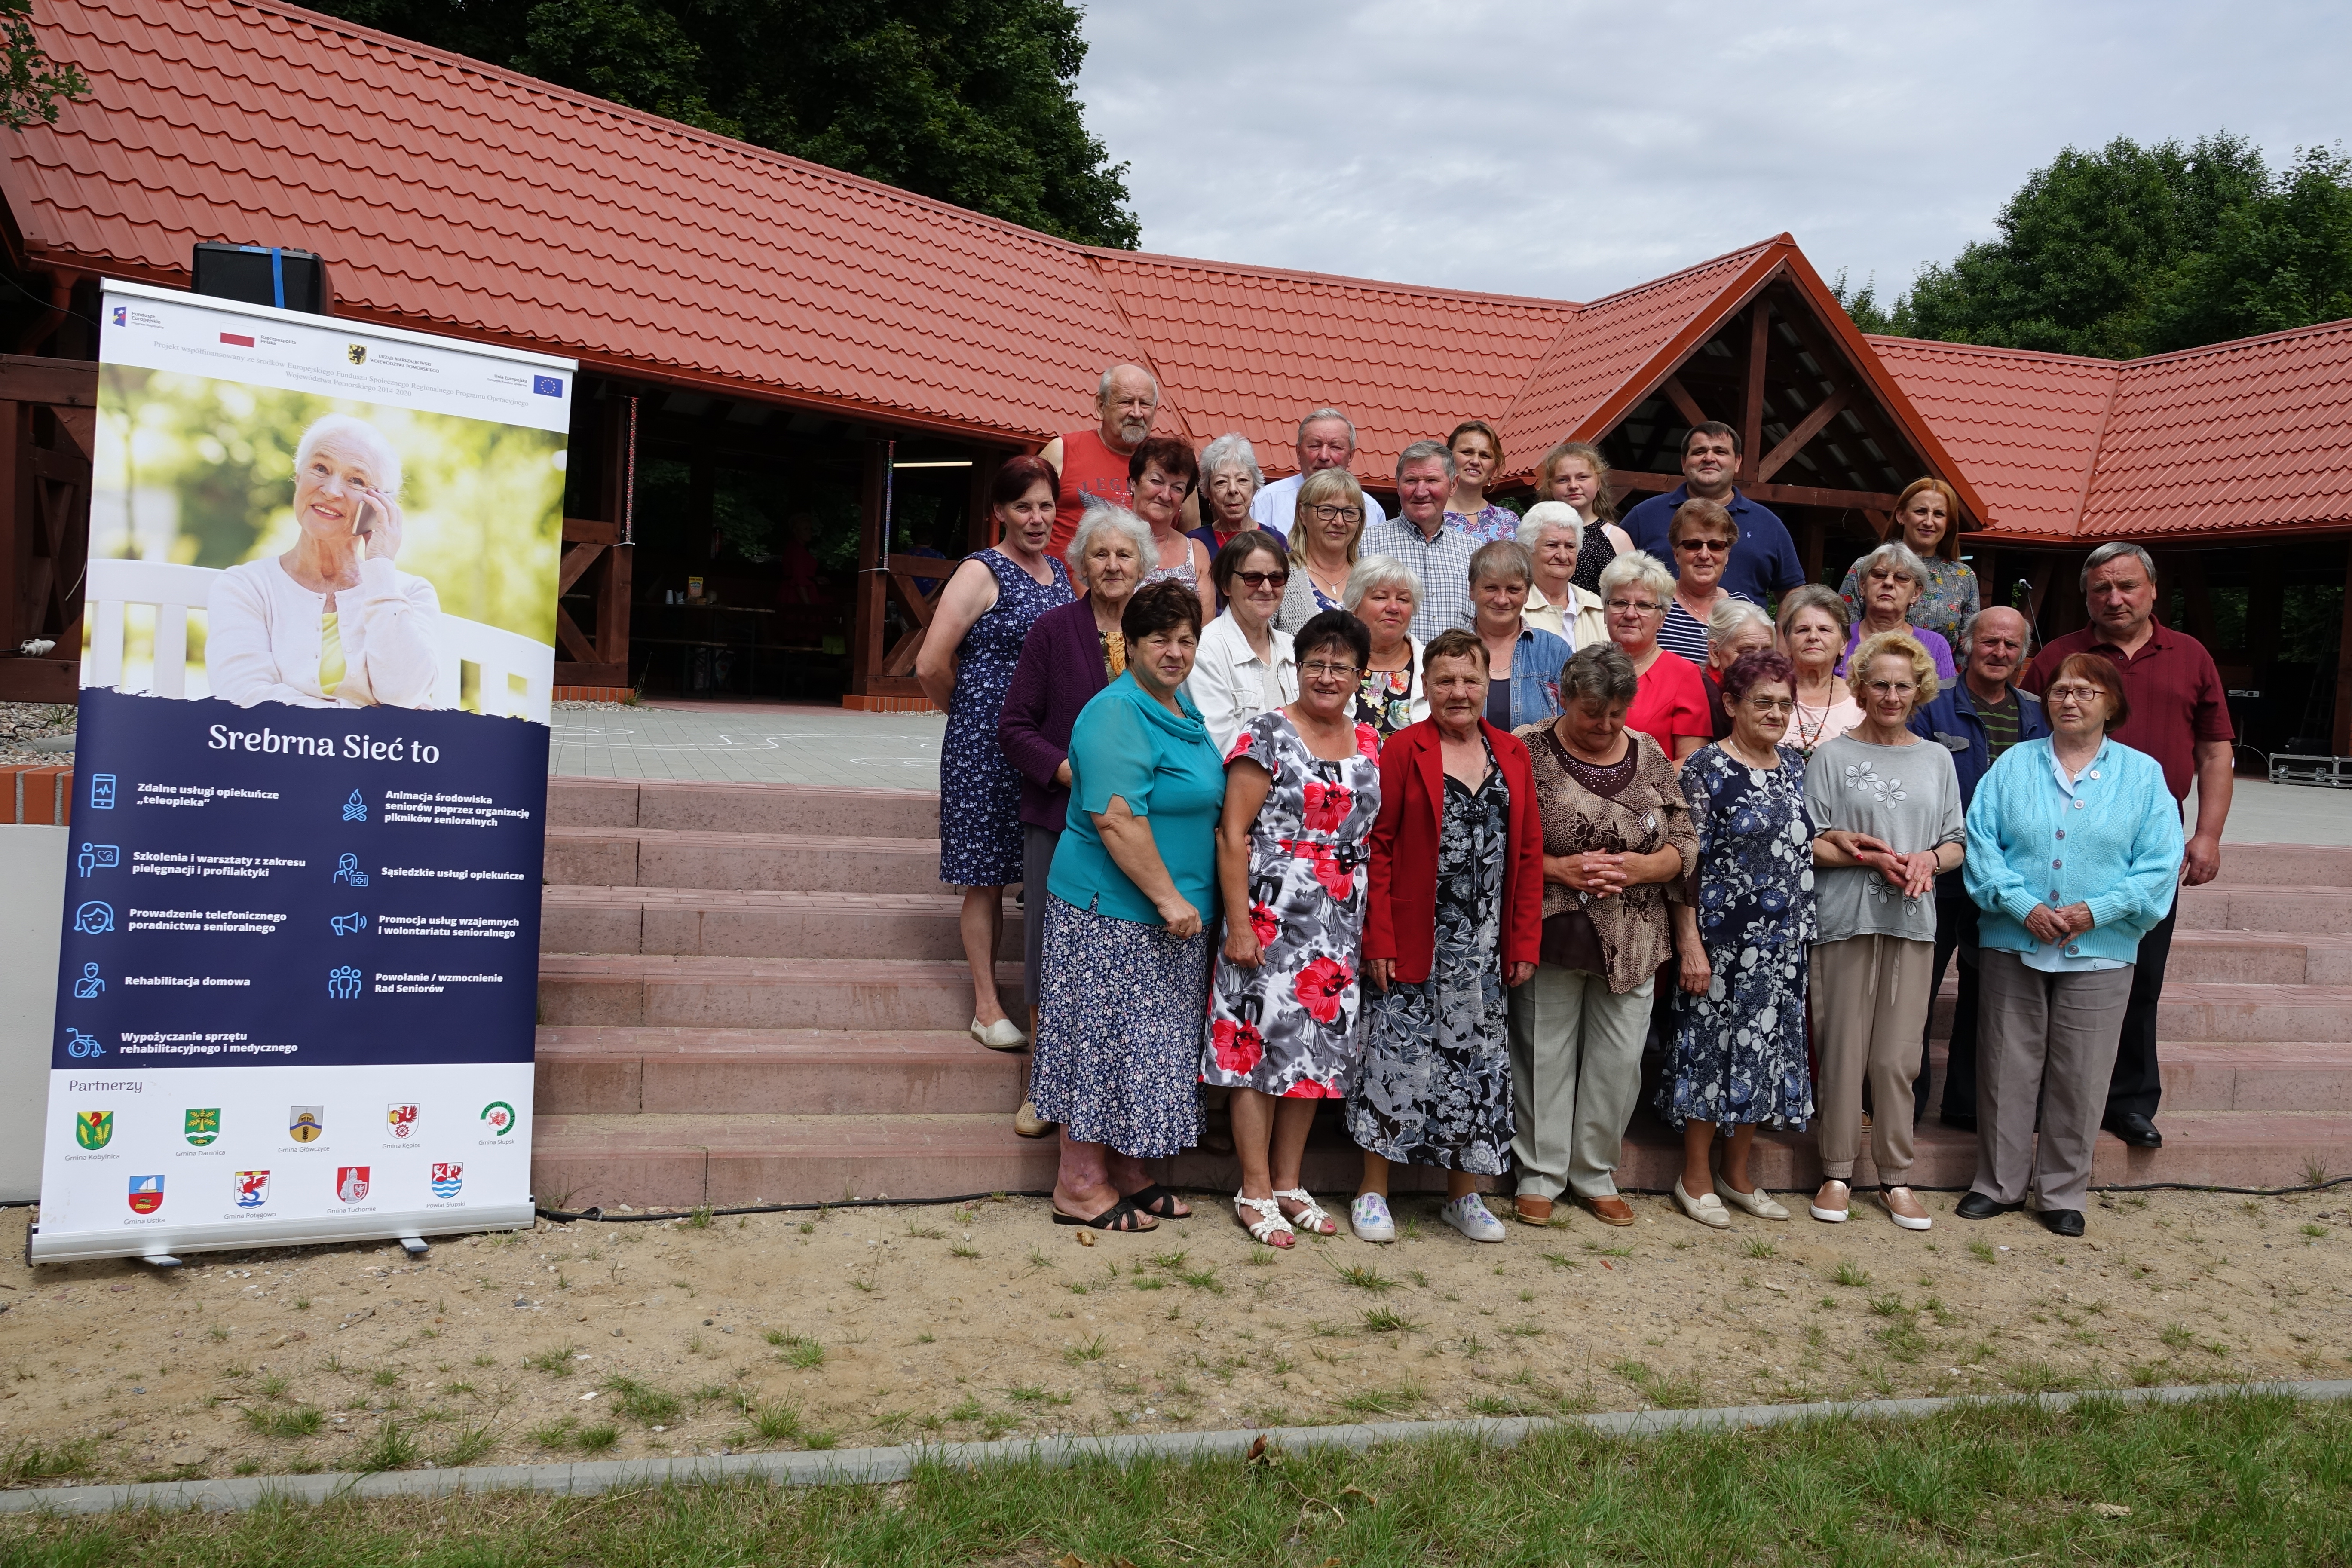 Grupa z gminy Główczyce pozująca do zdjęcia na tle obiektu w Strzyżynie, gdzie odbywała się biesiada.